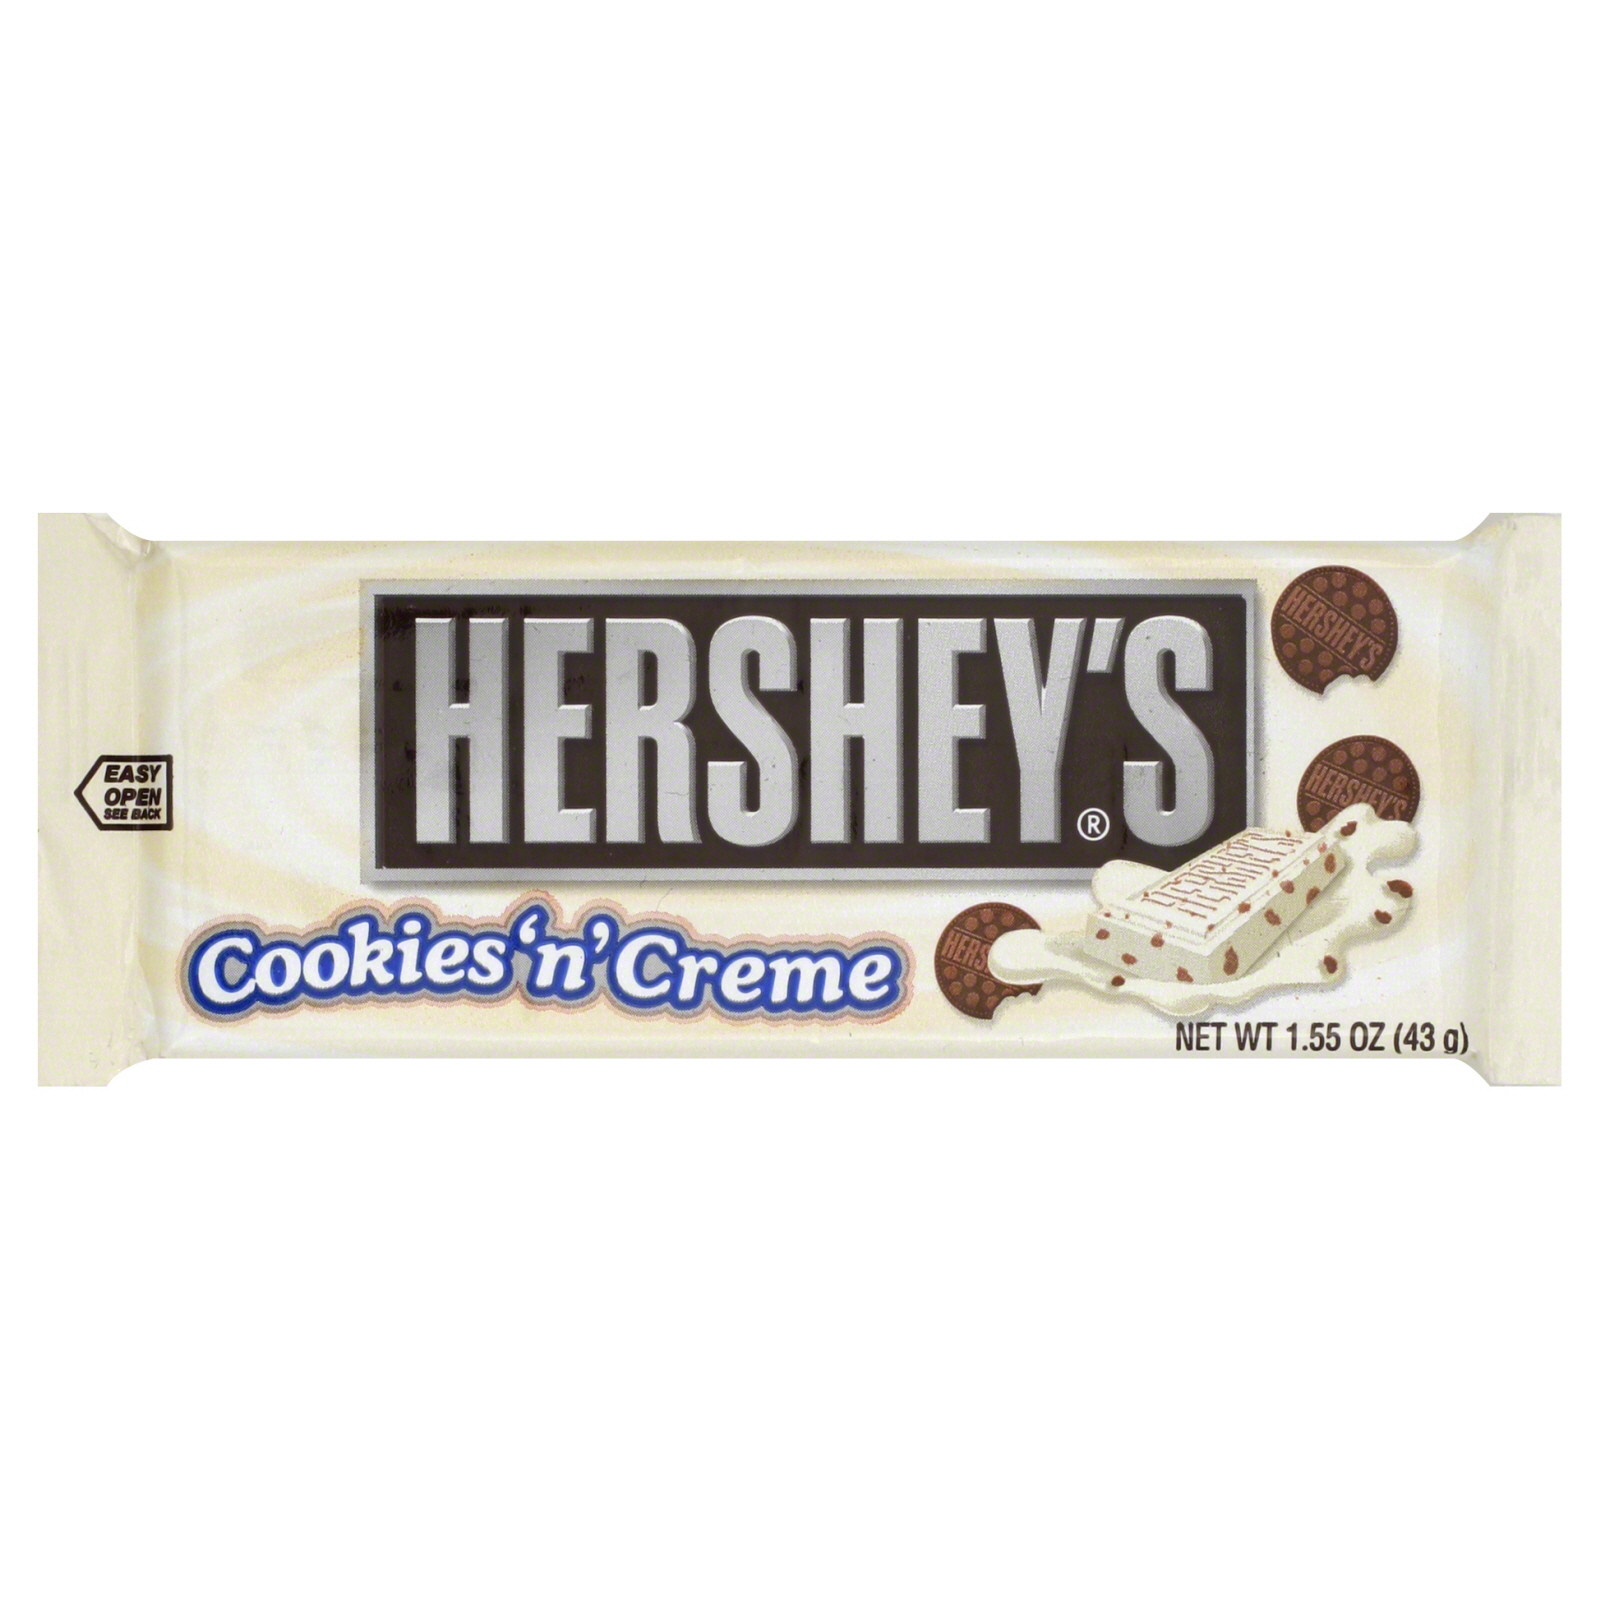 Hershey's Hershey&#65533;s Cookies 'n' Creme, 1.55 oz (43 g)